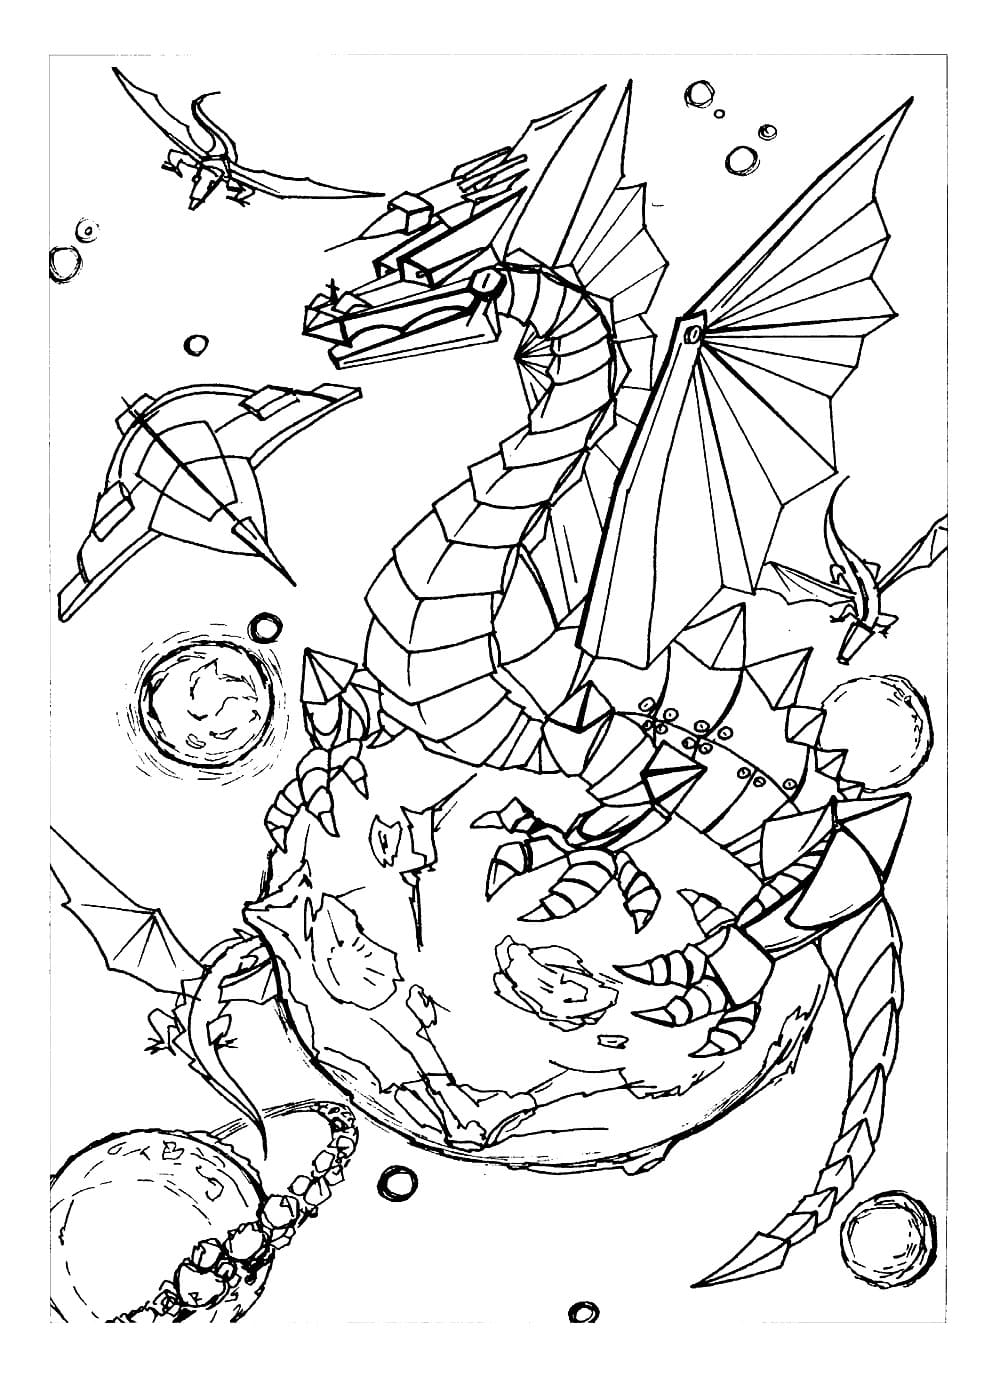 китайский дракон раскраска для детей распечатать бесплатно для мальчиков 4